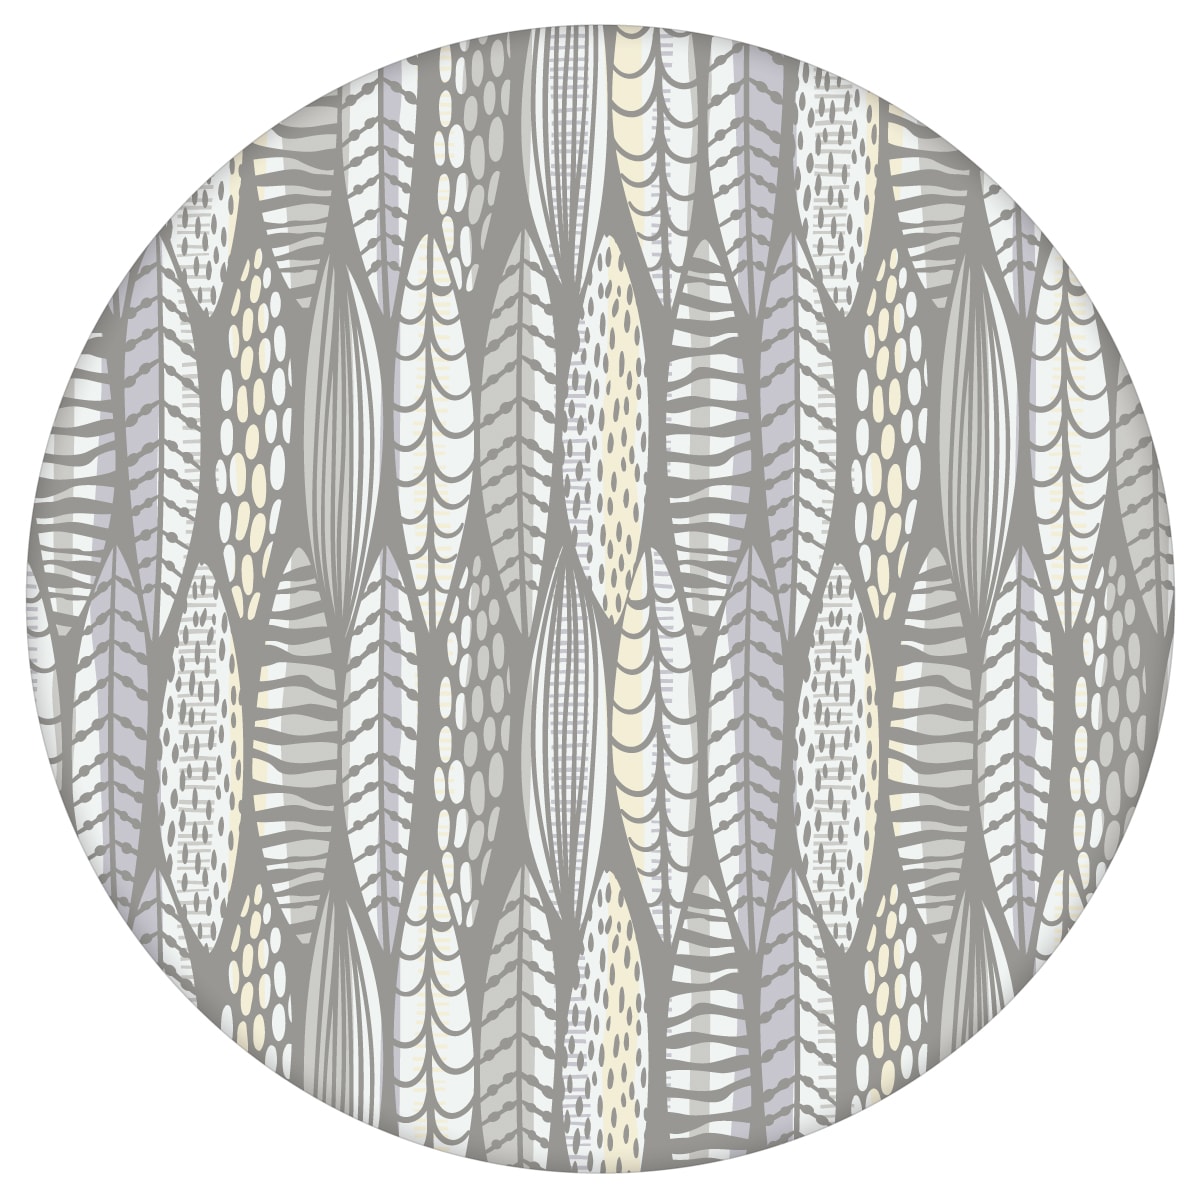 Moderne Tapete Streifen Blätter grafisch floral in grau, Streifentapete für Ihr Zuhause aus den Tapeten Neuheiten Blumentapeten und Borten als Naturaltouch Luxus Vliestapete oder Basic Vliestapete